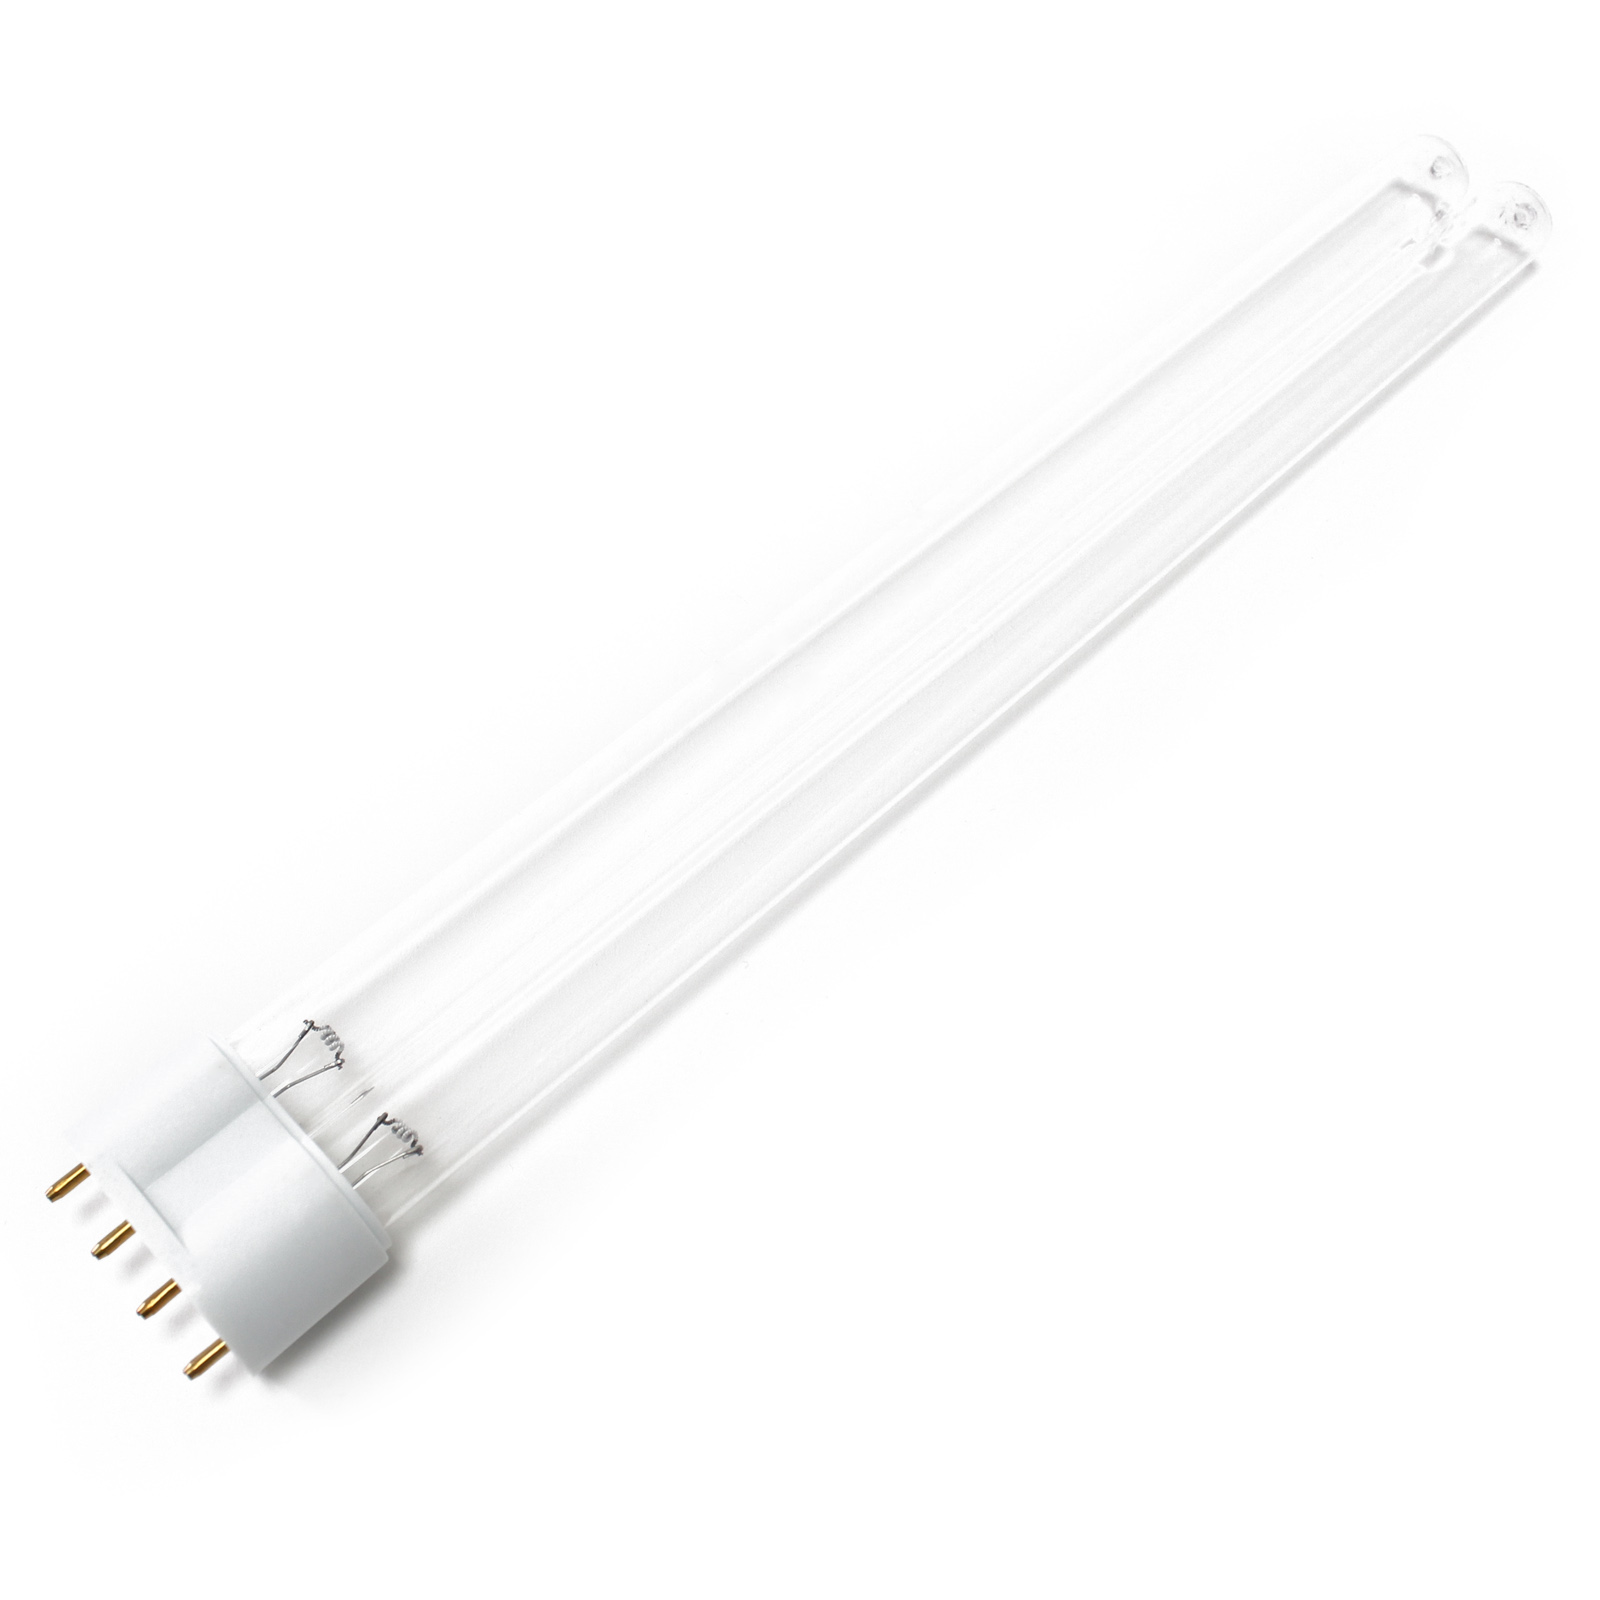 CUV-324 UV-C Lampe Röhre 24W Teich-Klärer UVC Leuchtmittel